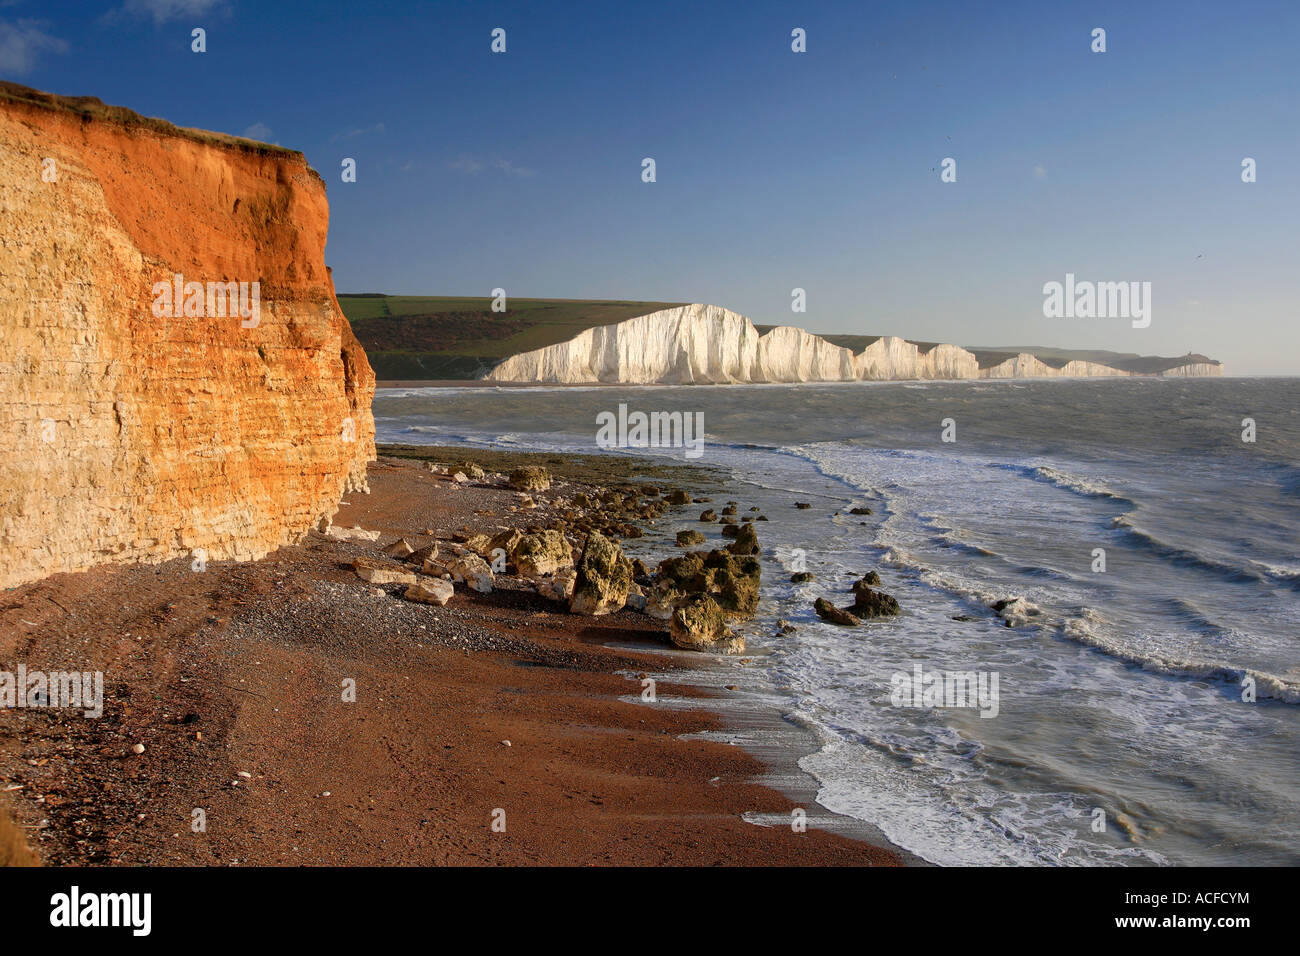 Les sept soeurs des falaises de craie de la plage de Seaford Head, South Downs Way, Sussex, Angleterre, Grande-Bretagne, Royaume-Uni Banque D'Images